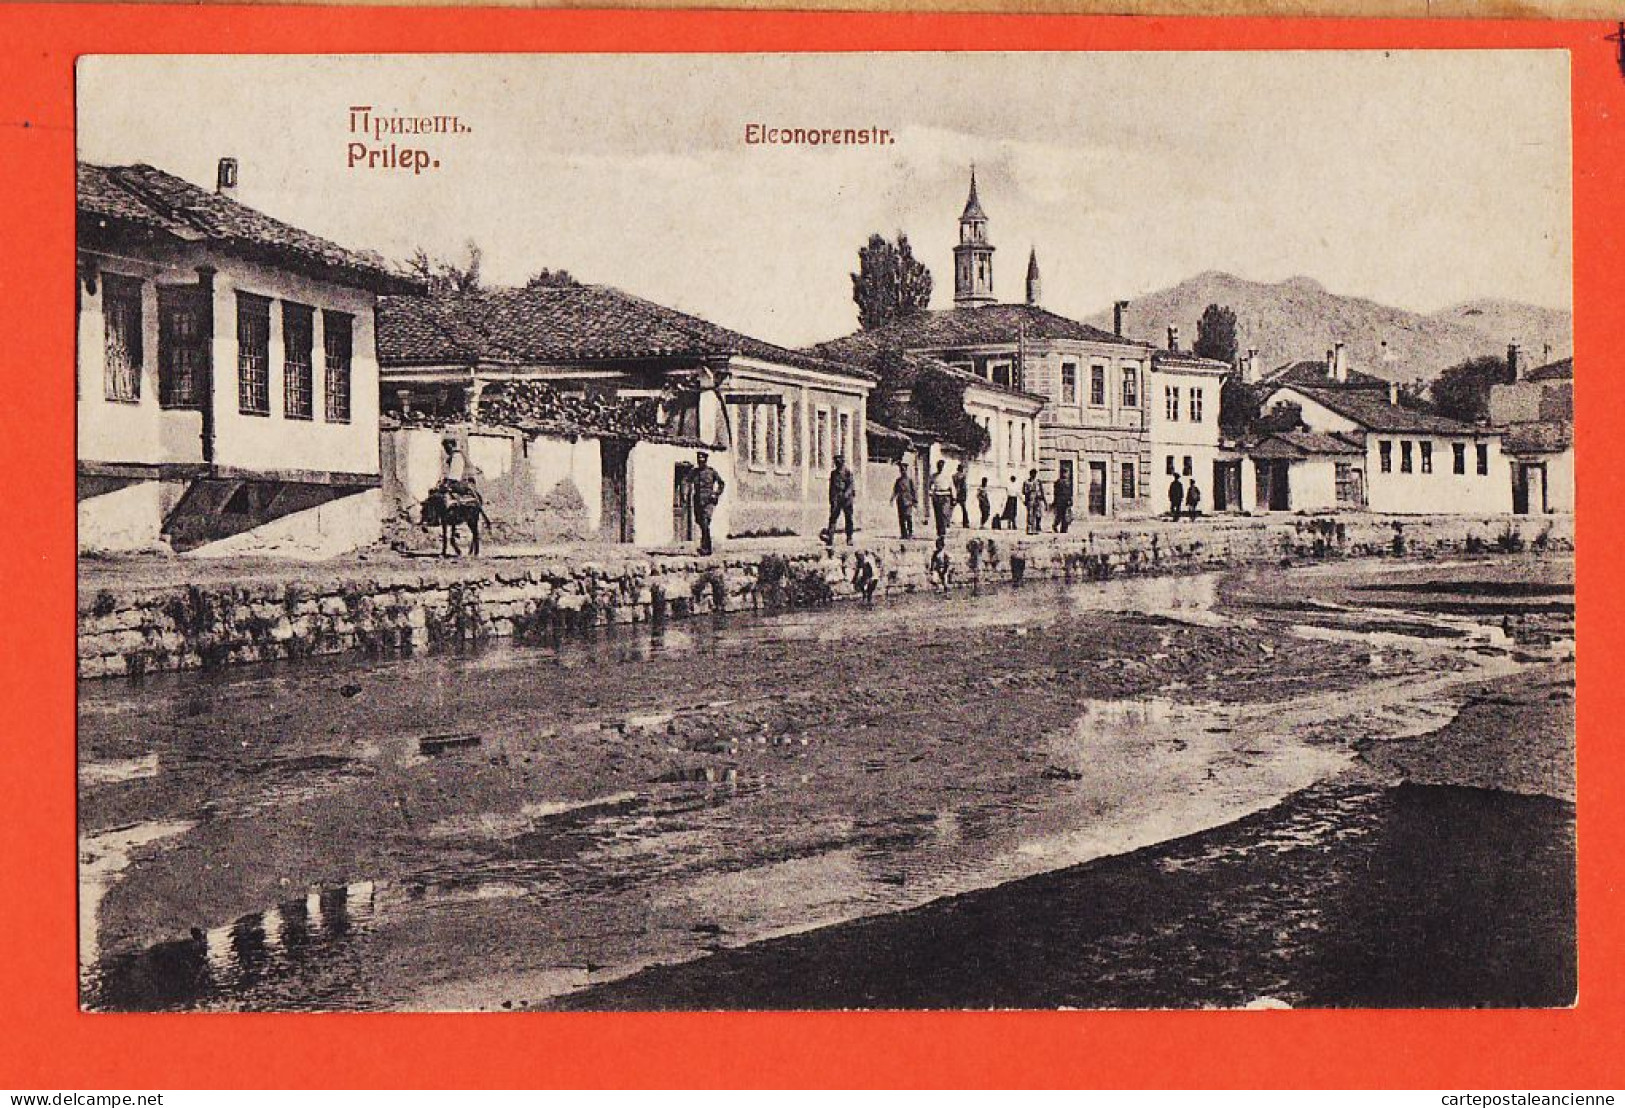 06481 / PRILEP Macedoine Eleonorenstr 1915s KNAPP Halberstadt - Macédoine Du Nord